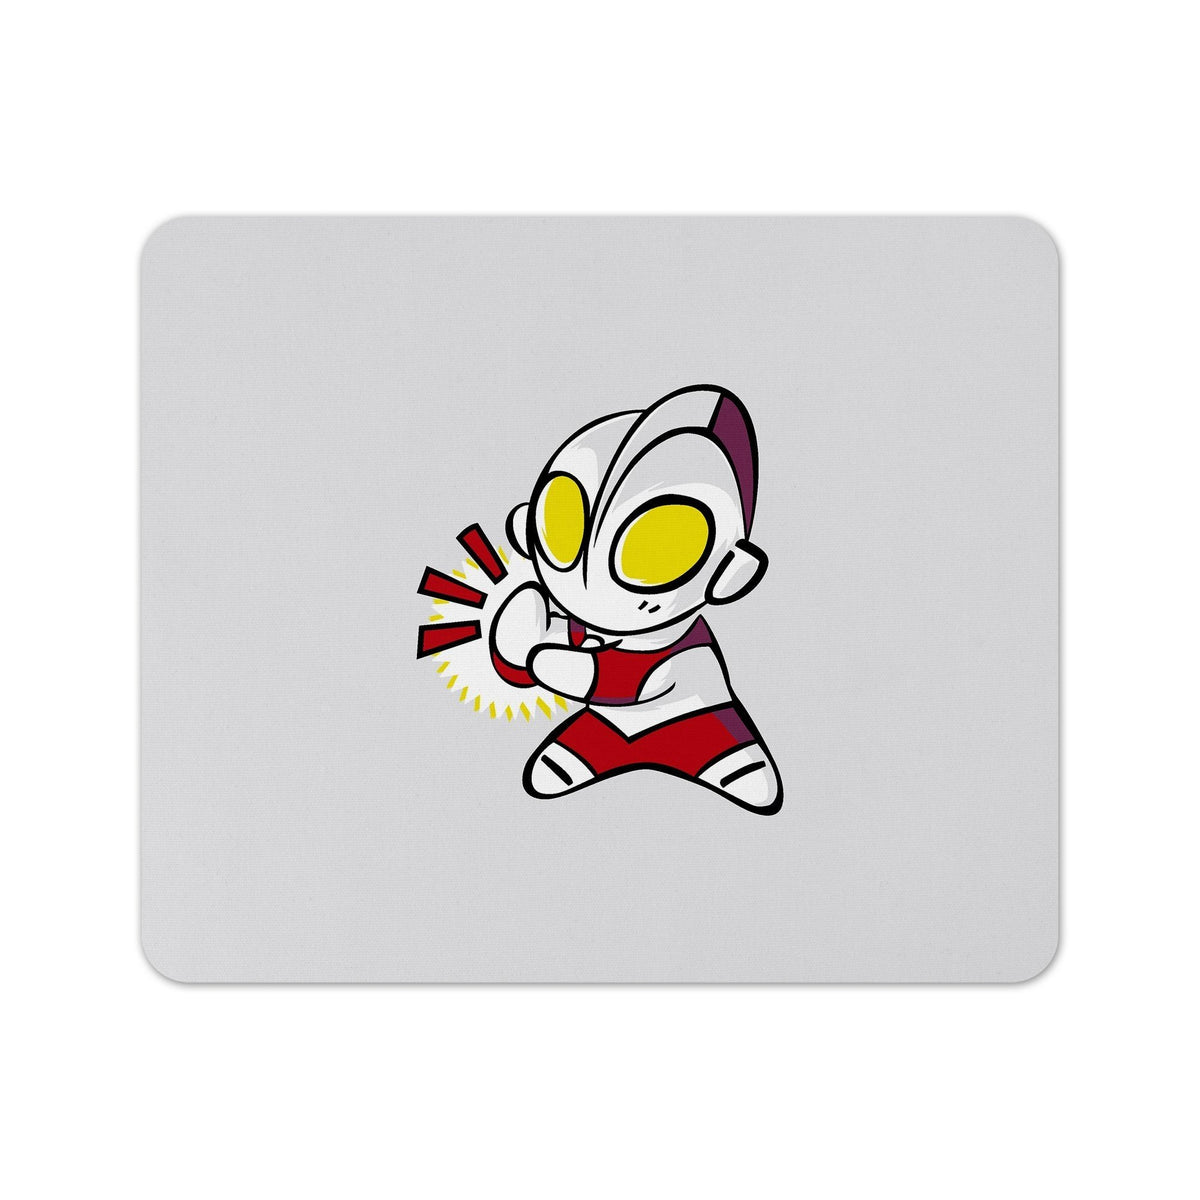 Ultraman Chibi 2 Anime Mouse Pad được thiết kế đáng yêu và đầy màu sắc - một món quà tuyệt vời cho những fan hâm mộ truyện tranh siêu nhân. Đây là sản phẩm tuyệt vời để bạn có thể sử dụng trong công việc và học tập hàng ngày, cũng như để tặng cho người bạn thân yêu. Hãy nhấn vào hình ảnh để khám phá thêm về Ultraman Chibi 2 Anime Mouse Pad.